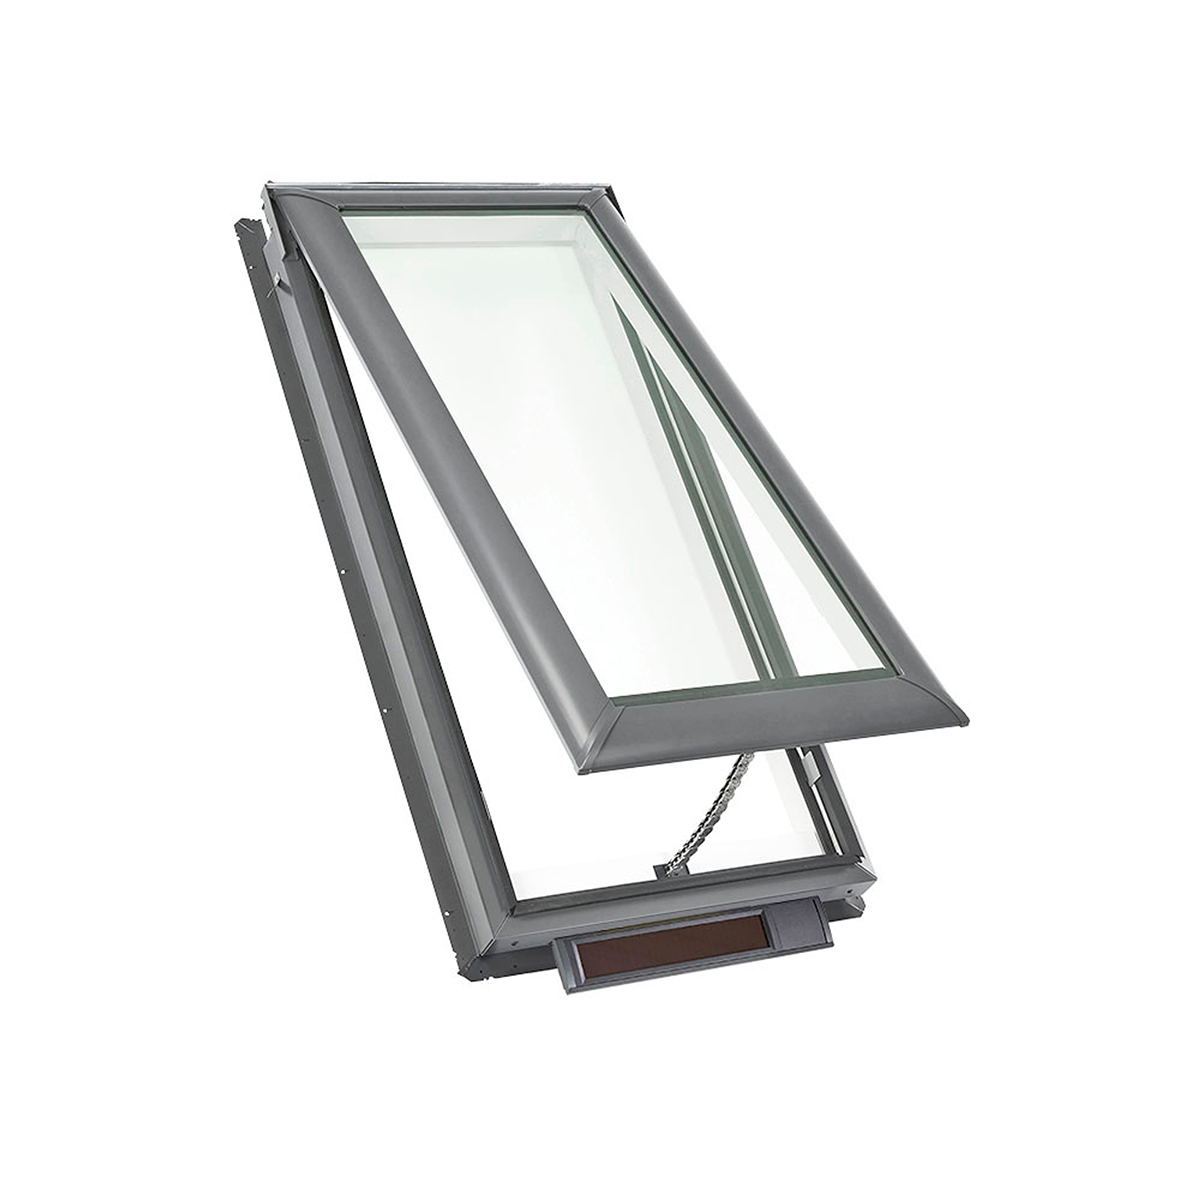 Claraboya de montaje en plataforma con energía solar y vidrio laminado de bajo E3 - 30-1/16 pulg. x 54-7/16 pulg. - VSS M08